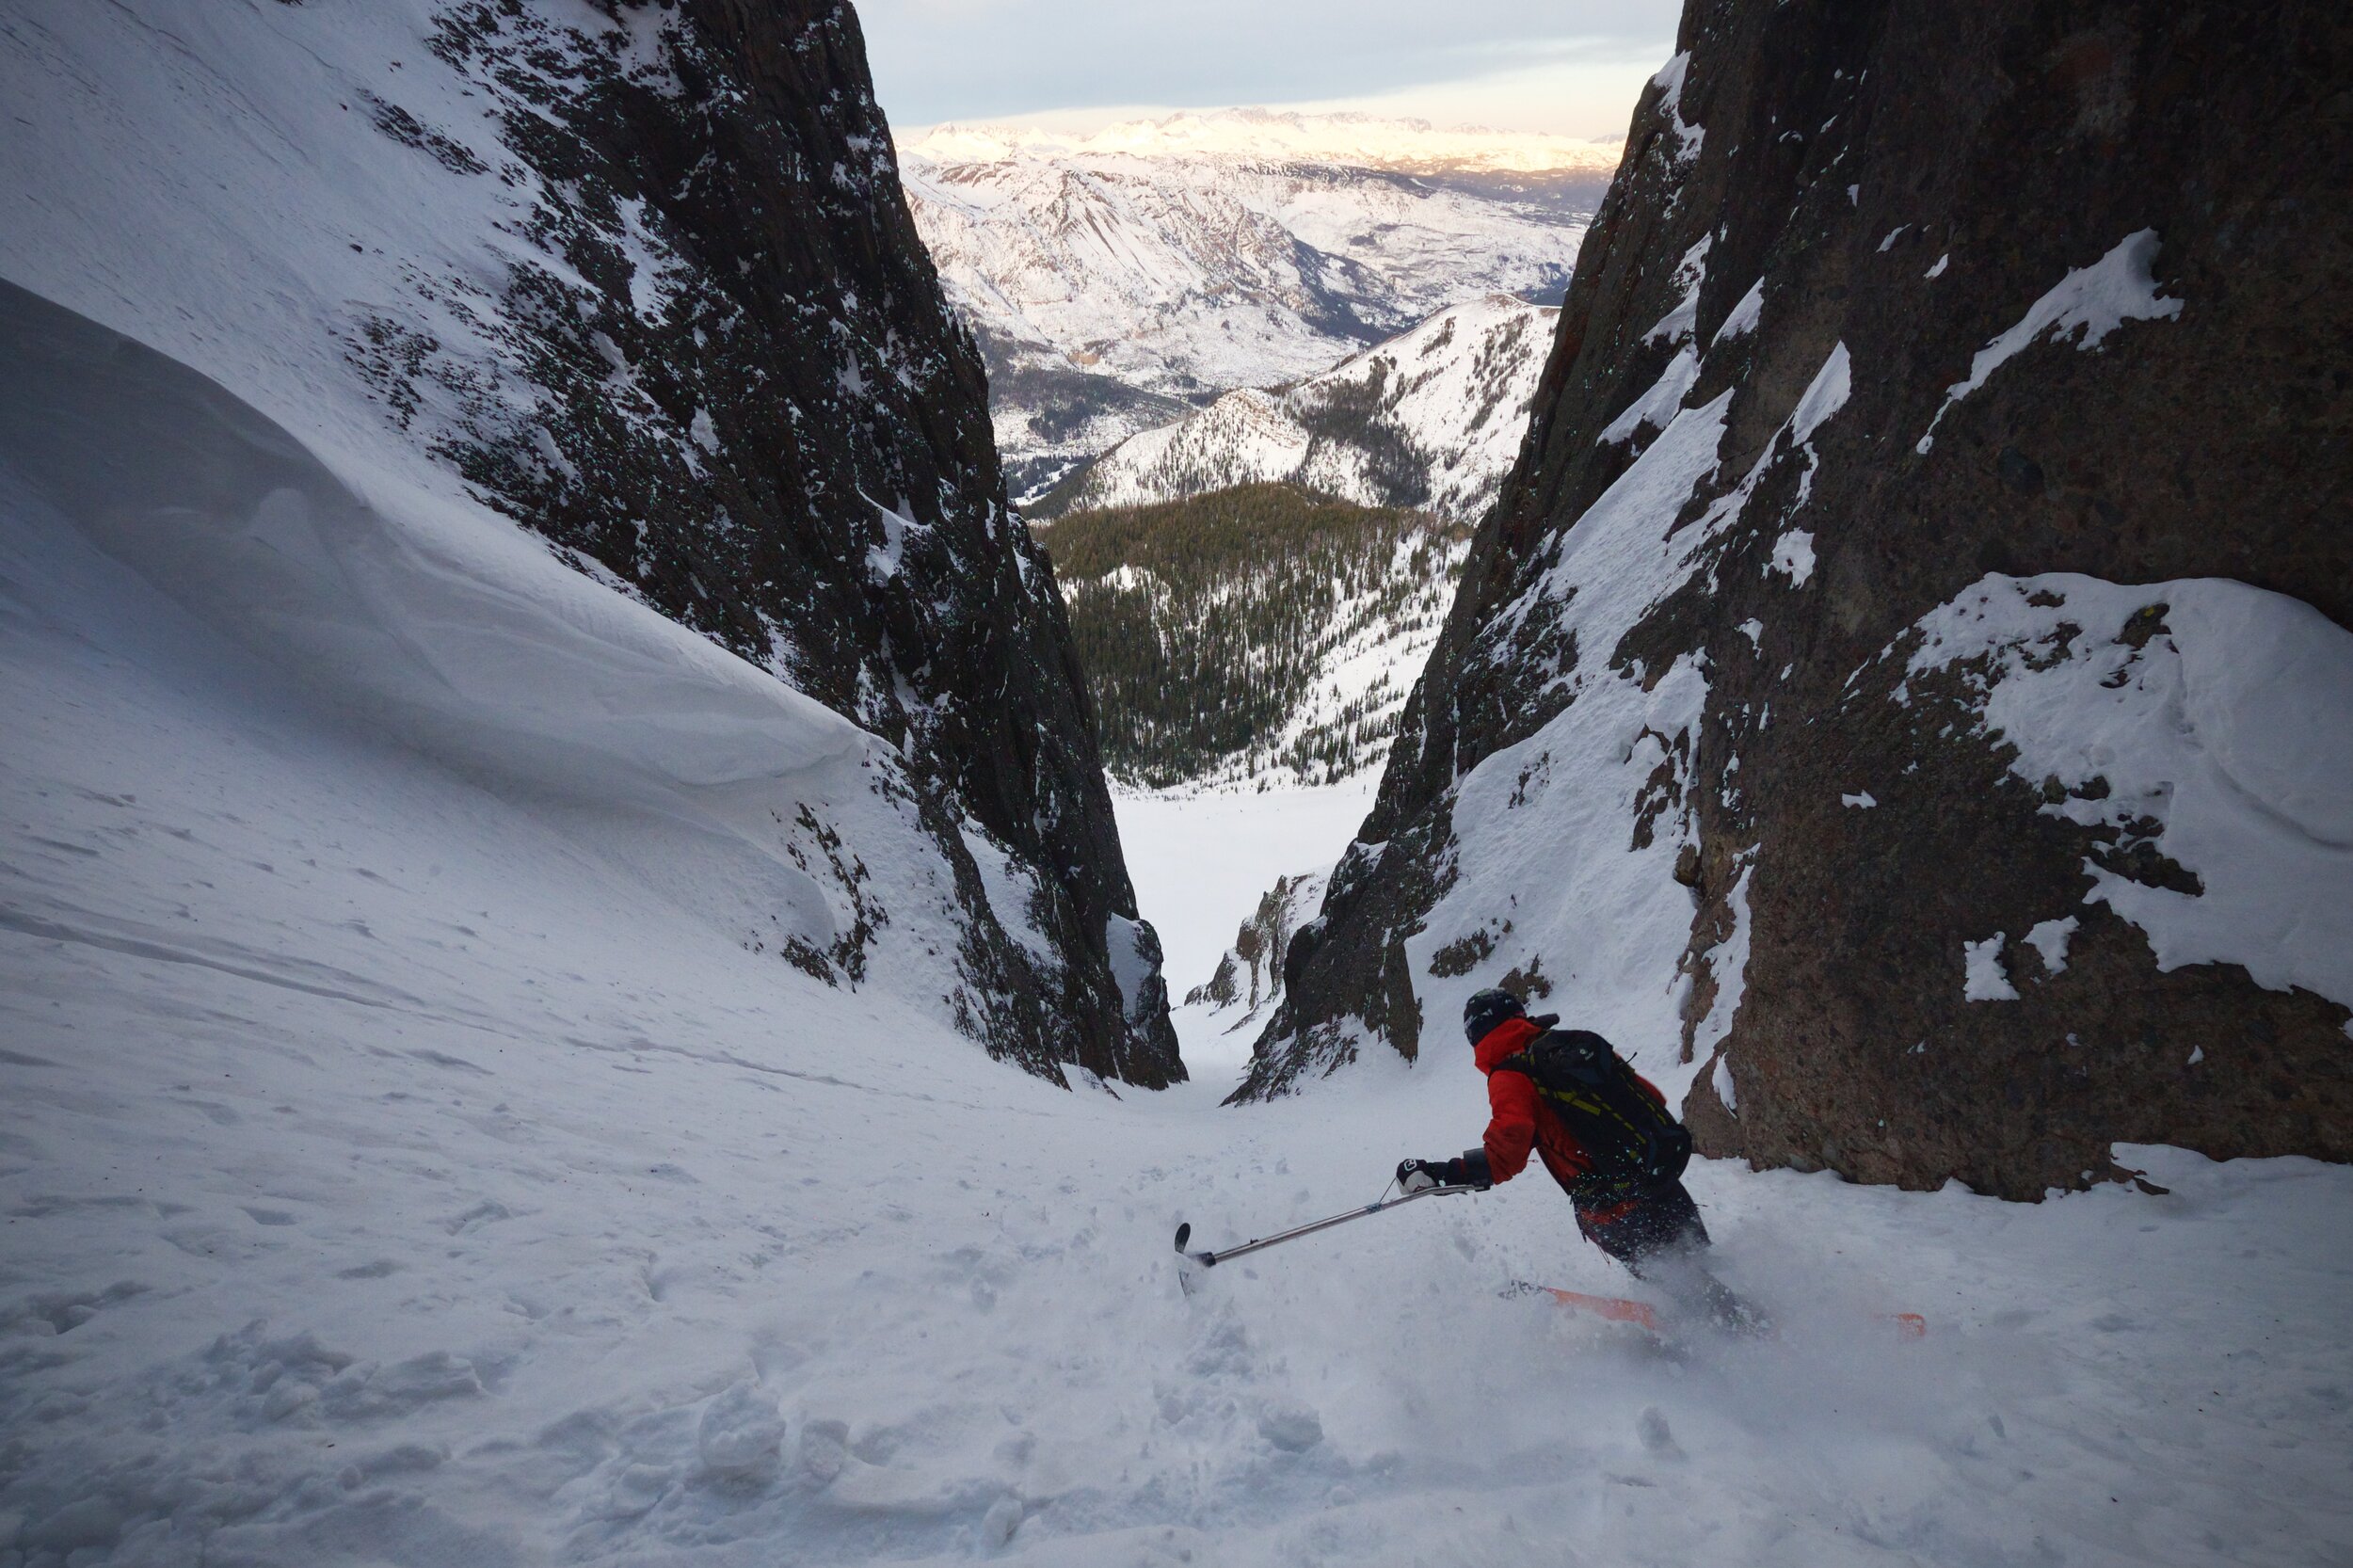 Vasu skiing down a mountain